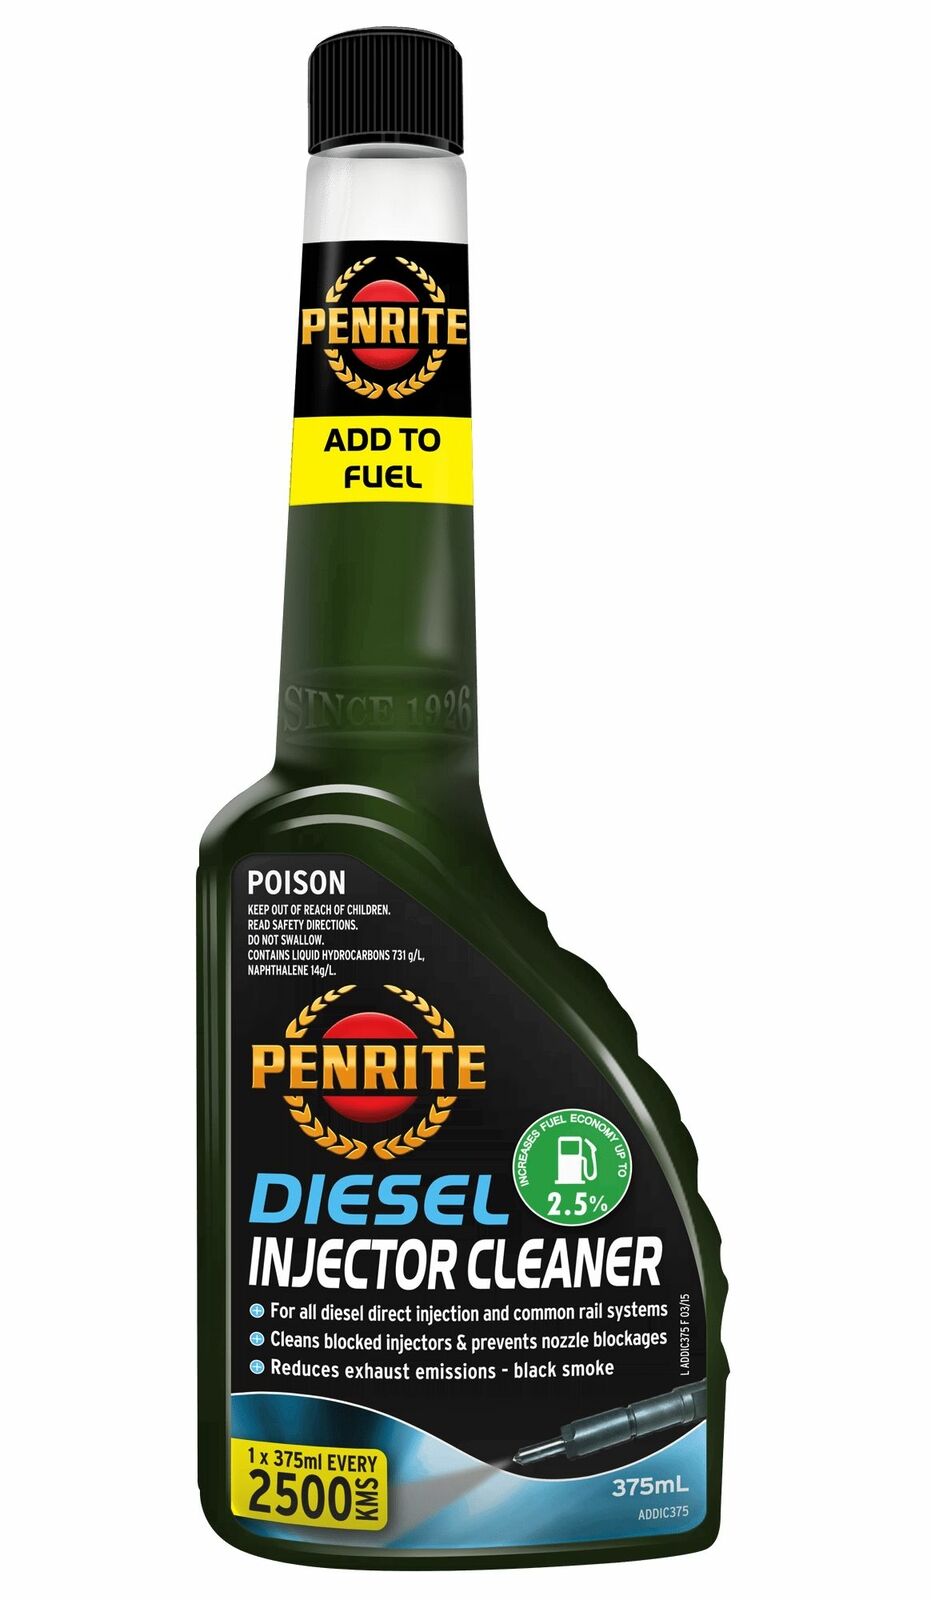 Penrite Diesel Injector Cleaner 375mL - ADDIC375 – Chemox